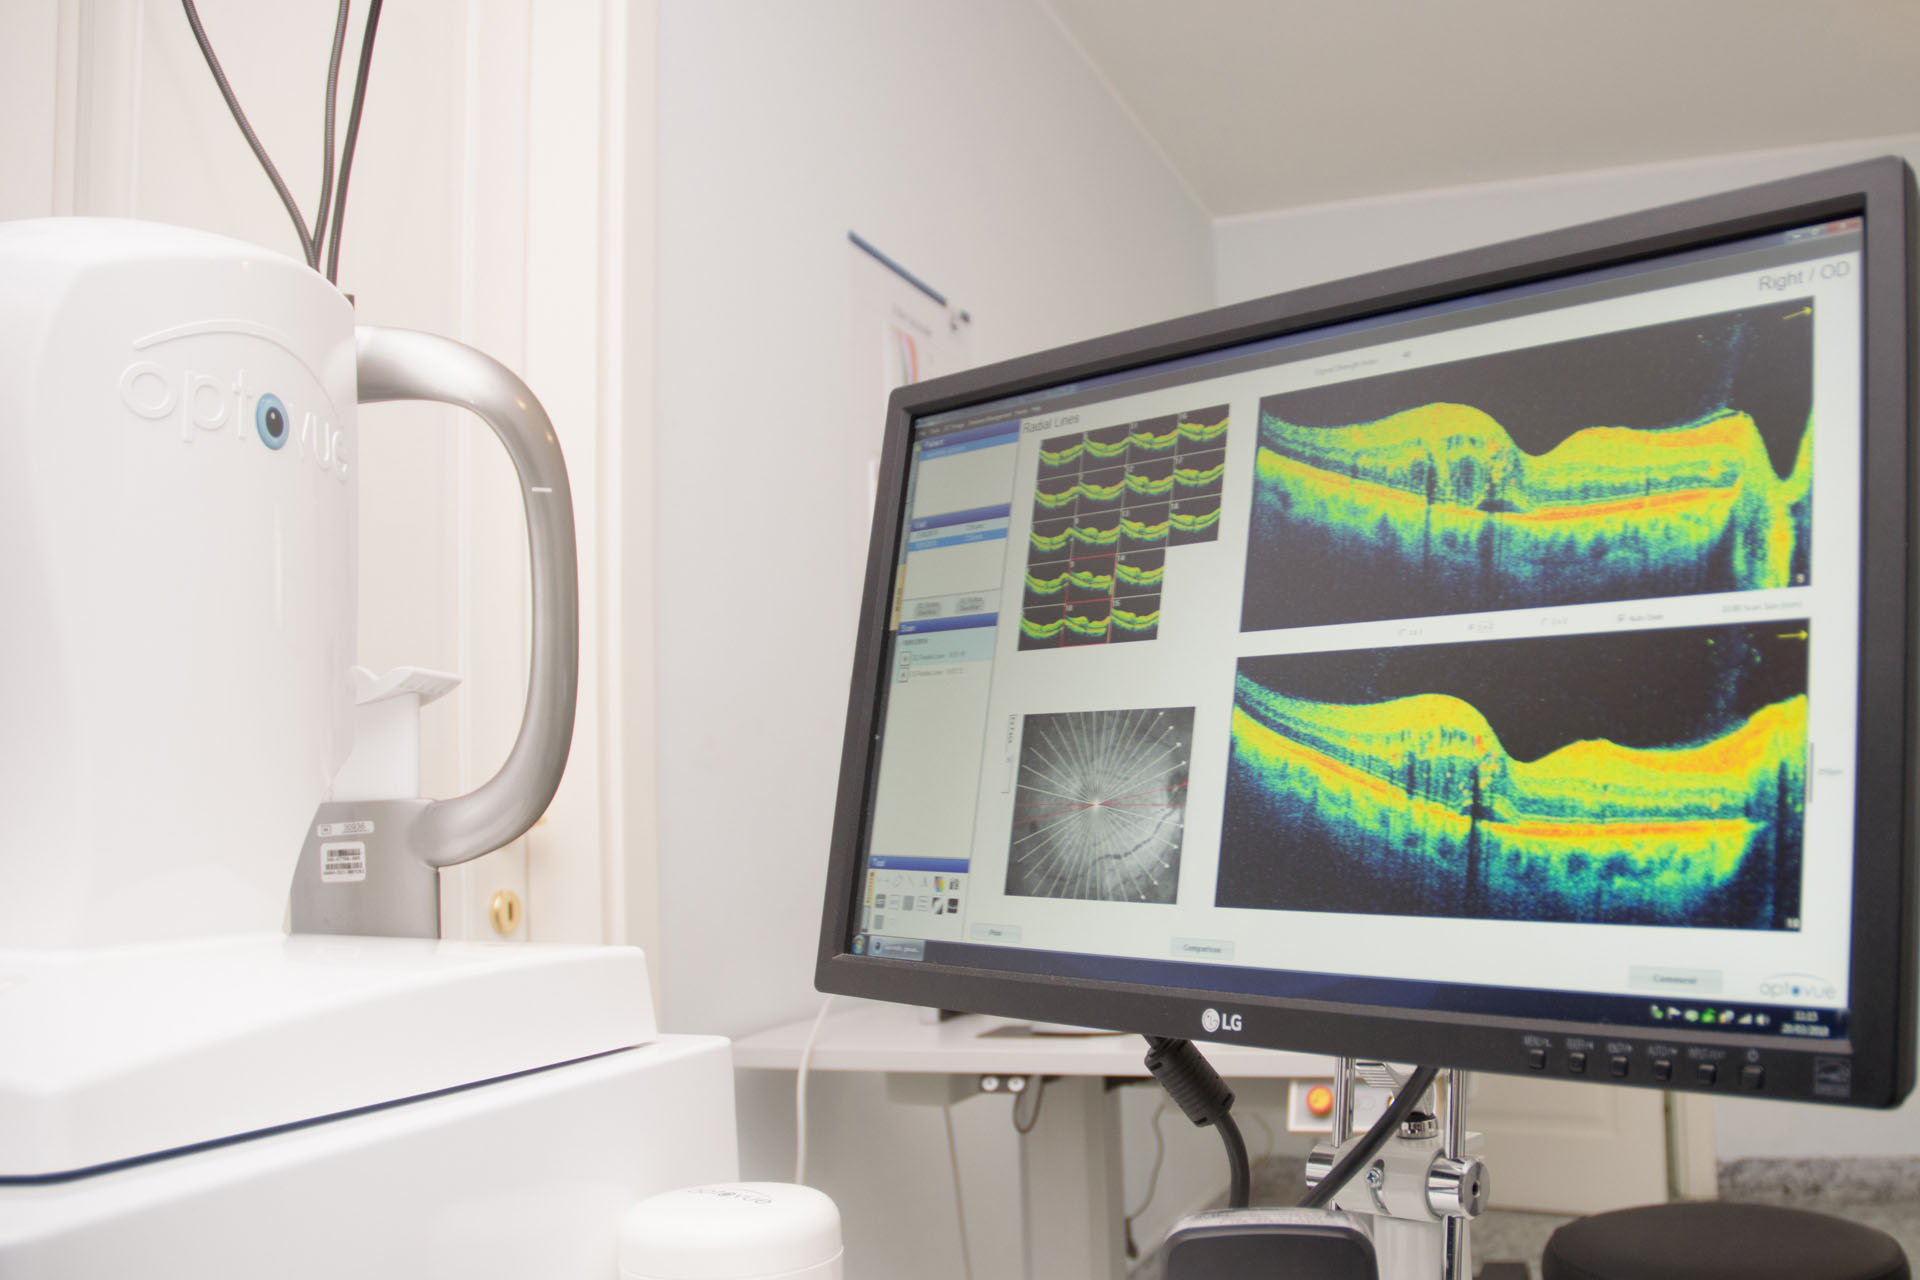 Tomografia ottica computerizzata  (OCT) - Angio-OCT